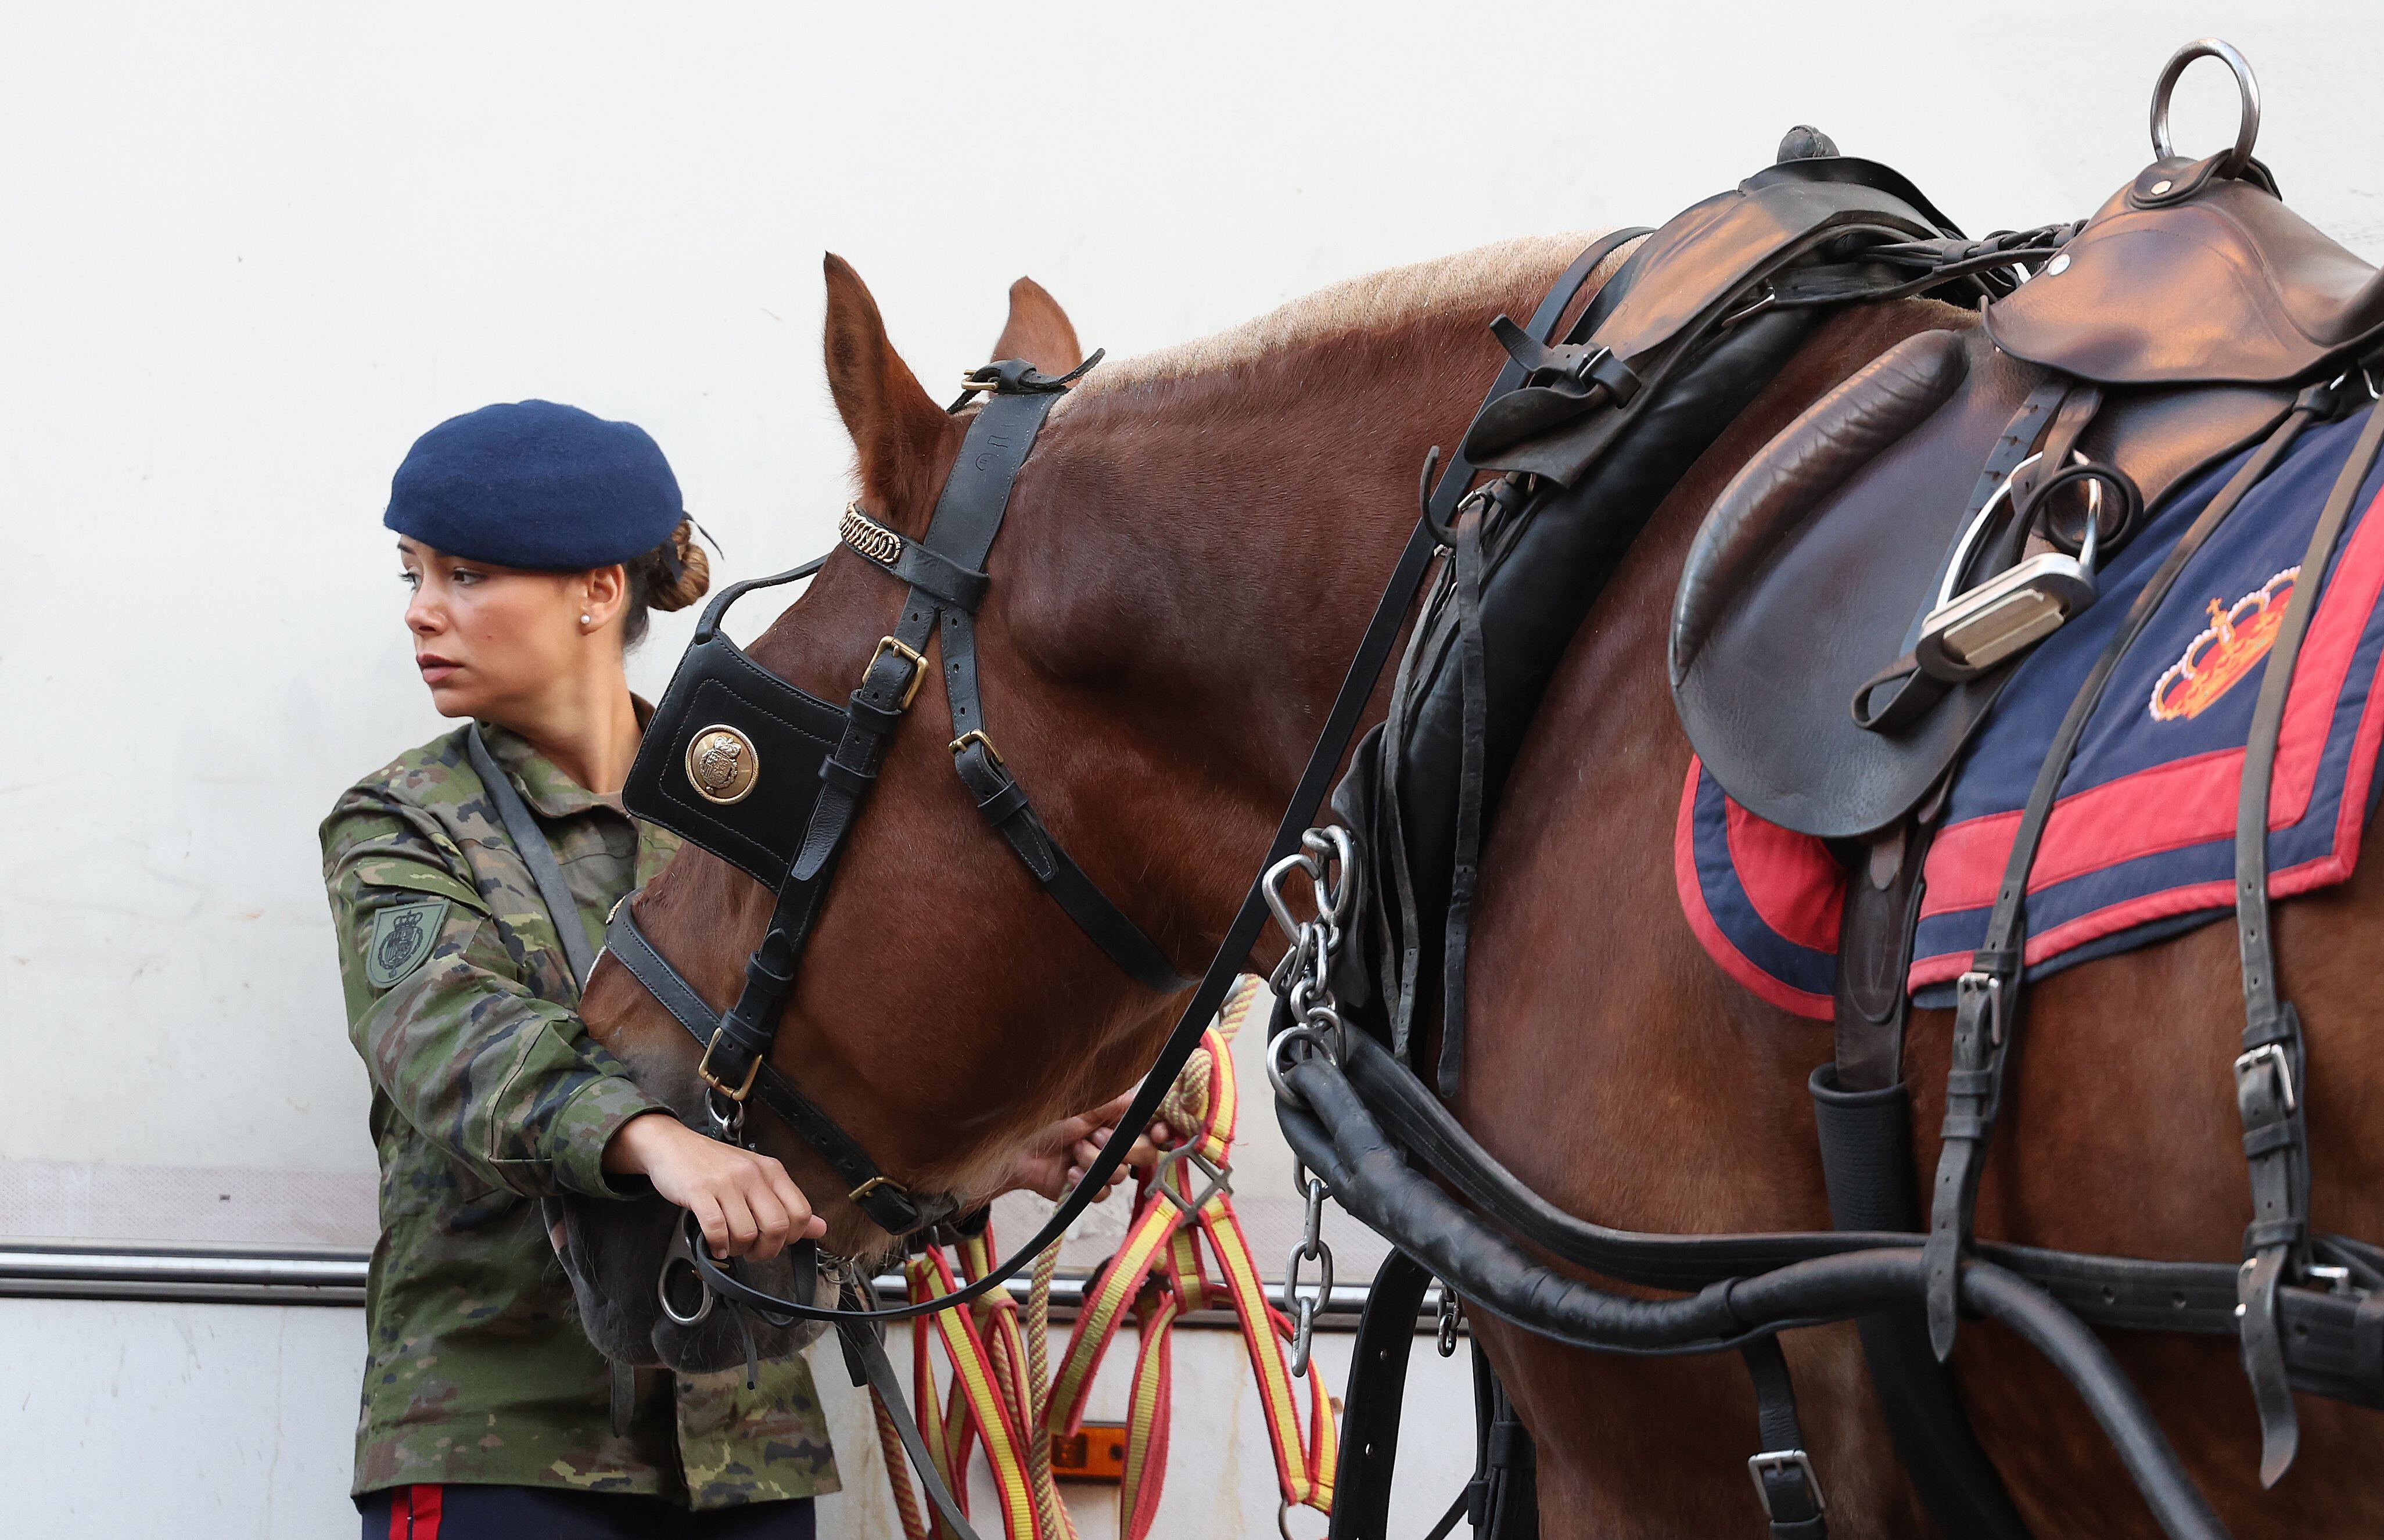 Una integrante de la Guardia Real preparaba el caballo para desfilar.